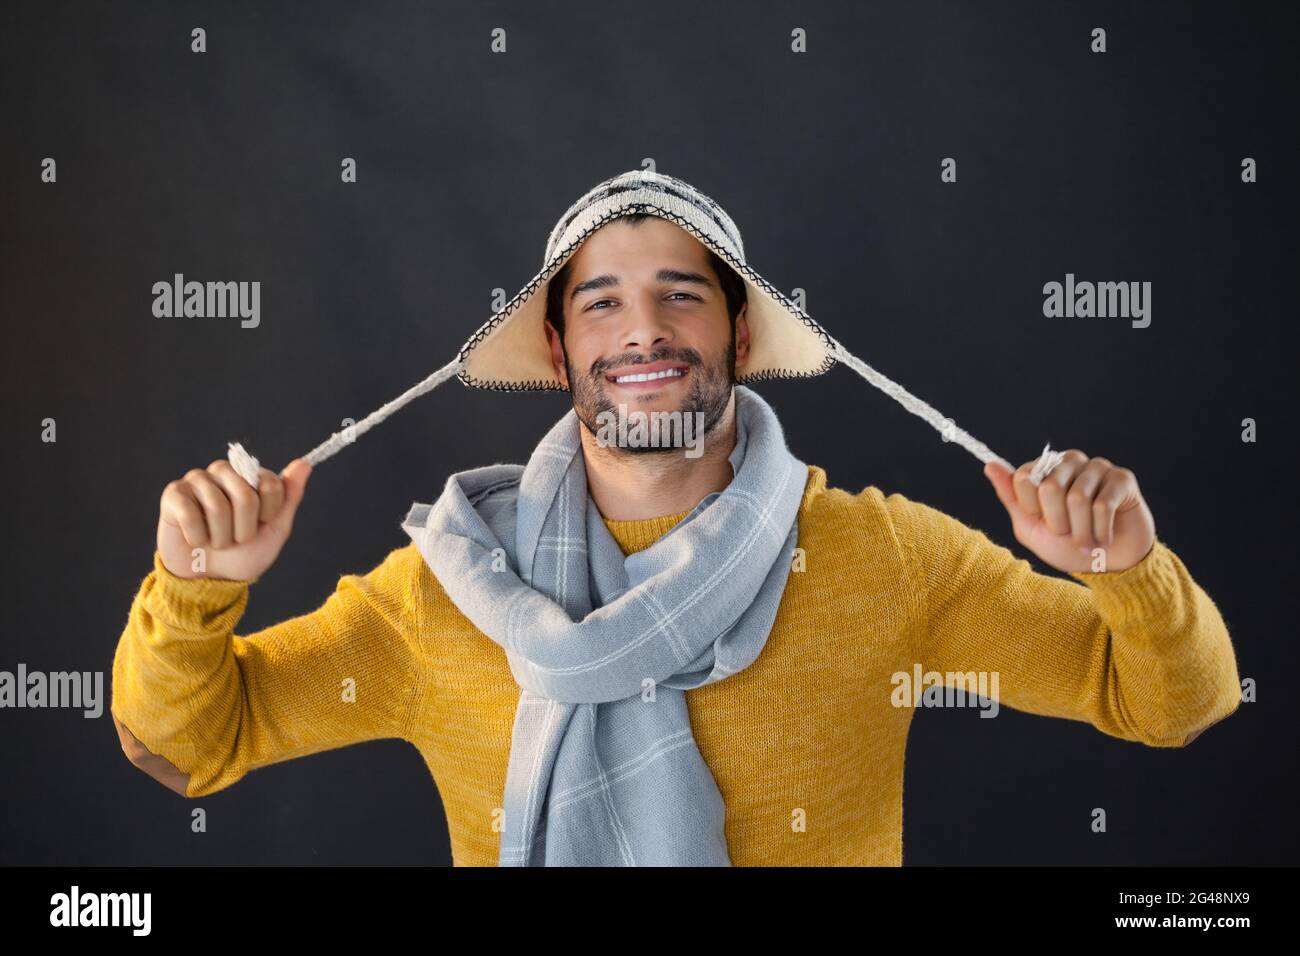 Ritratto di uomo sorridente che tiene il cappello di lana Foto Stock